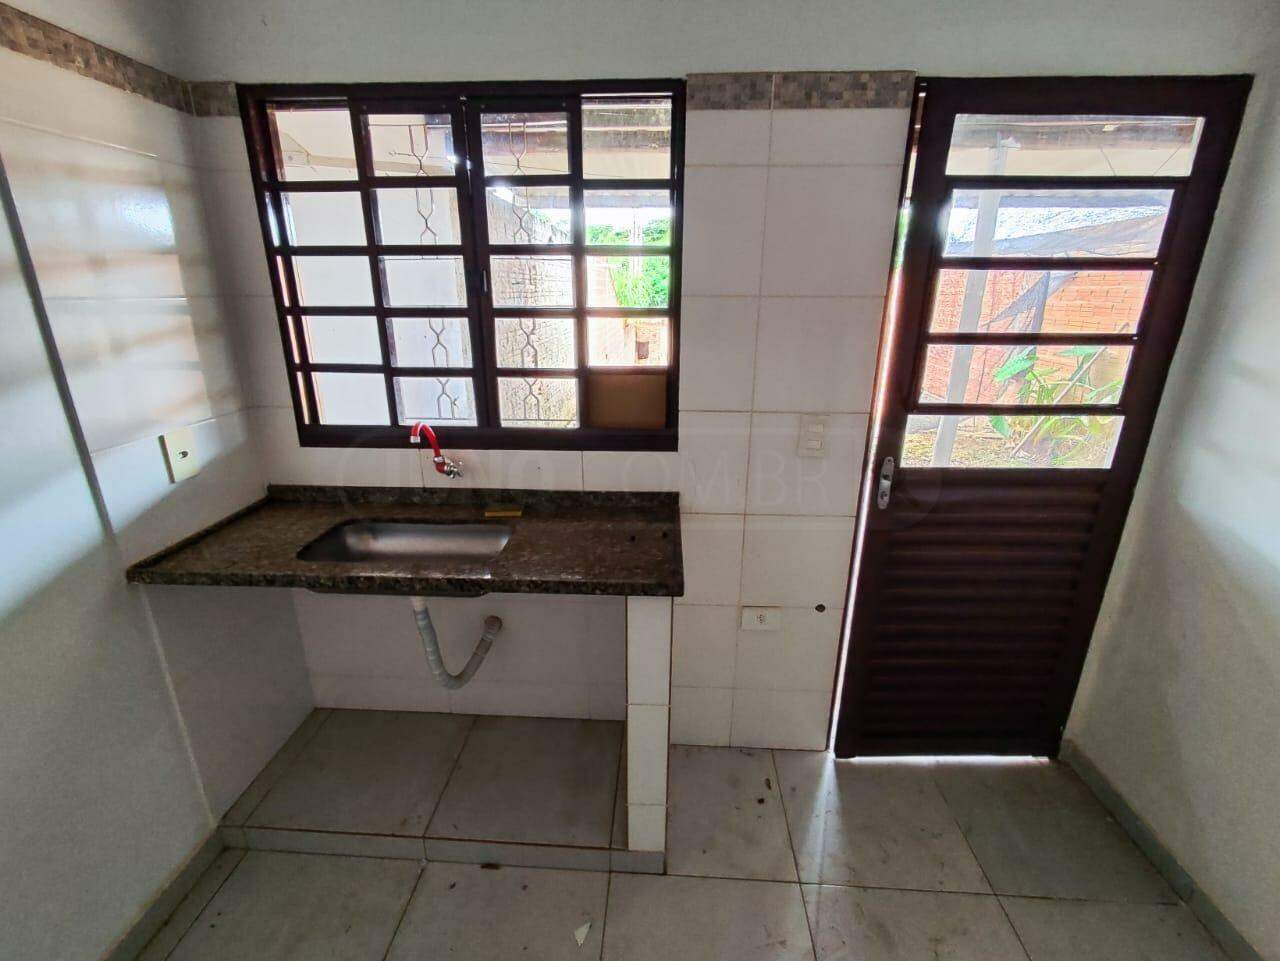 Casa à venda, 1 quarto, sendo 1 suíte, 2 vagas, no bairro Jardim São Carlos em Rio das Pedras - SP